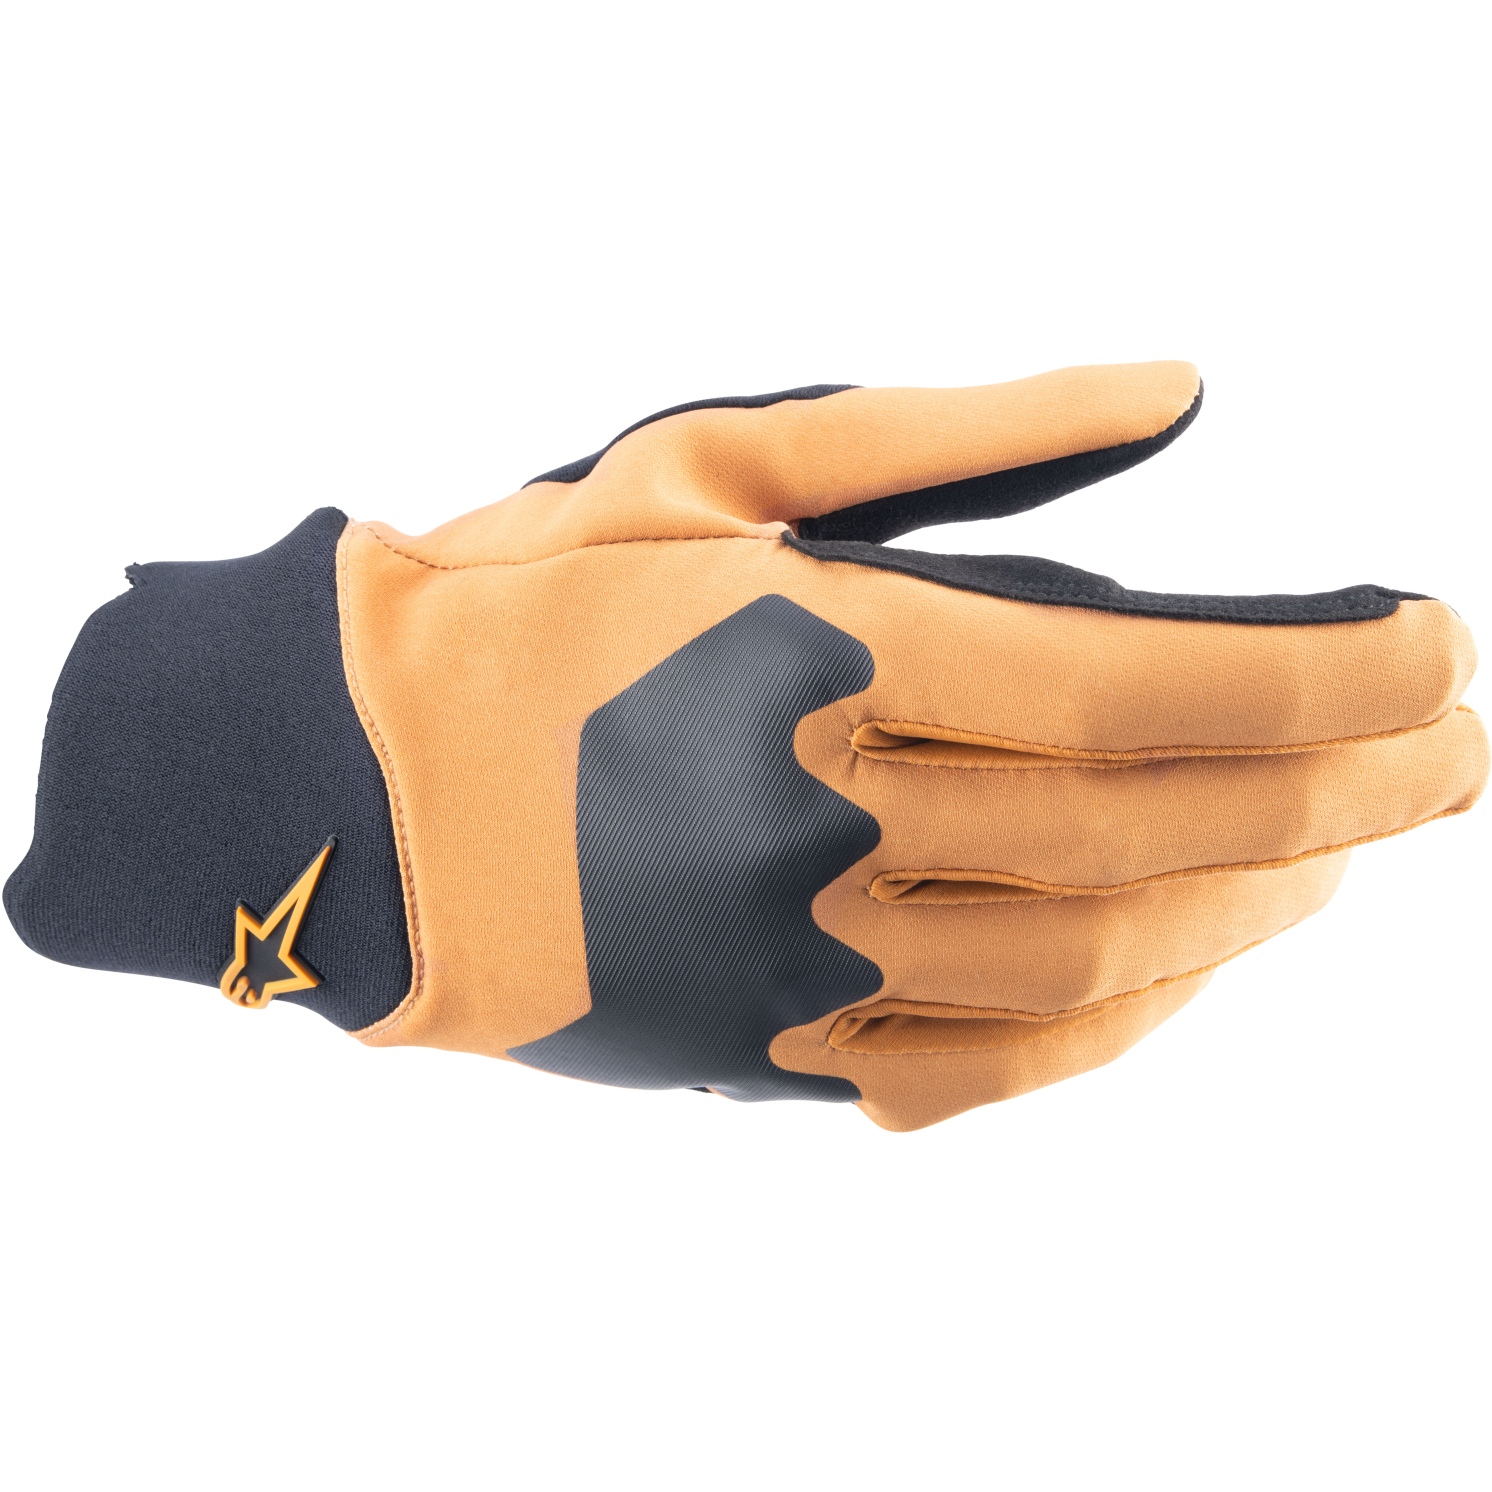 Productfoto van Alpinestars A-Supra Handschoenen - dark gold